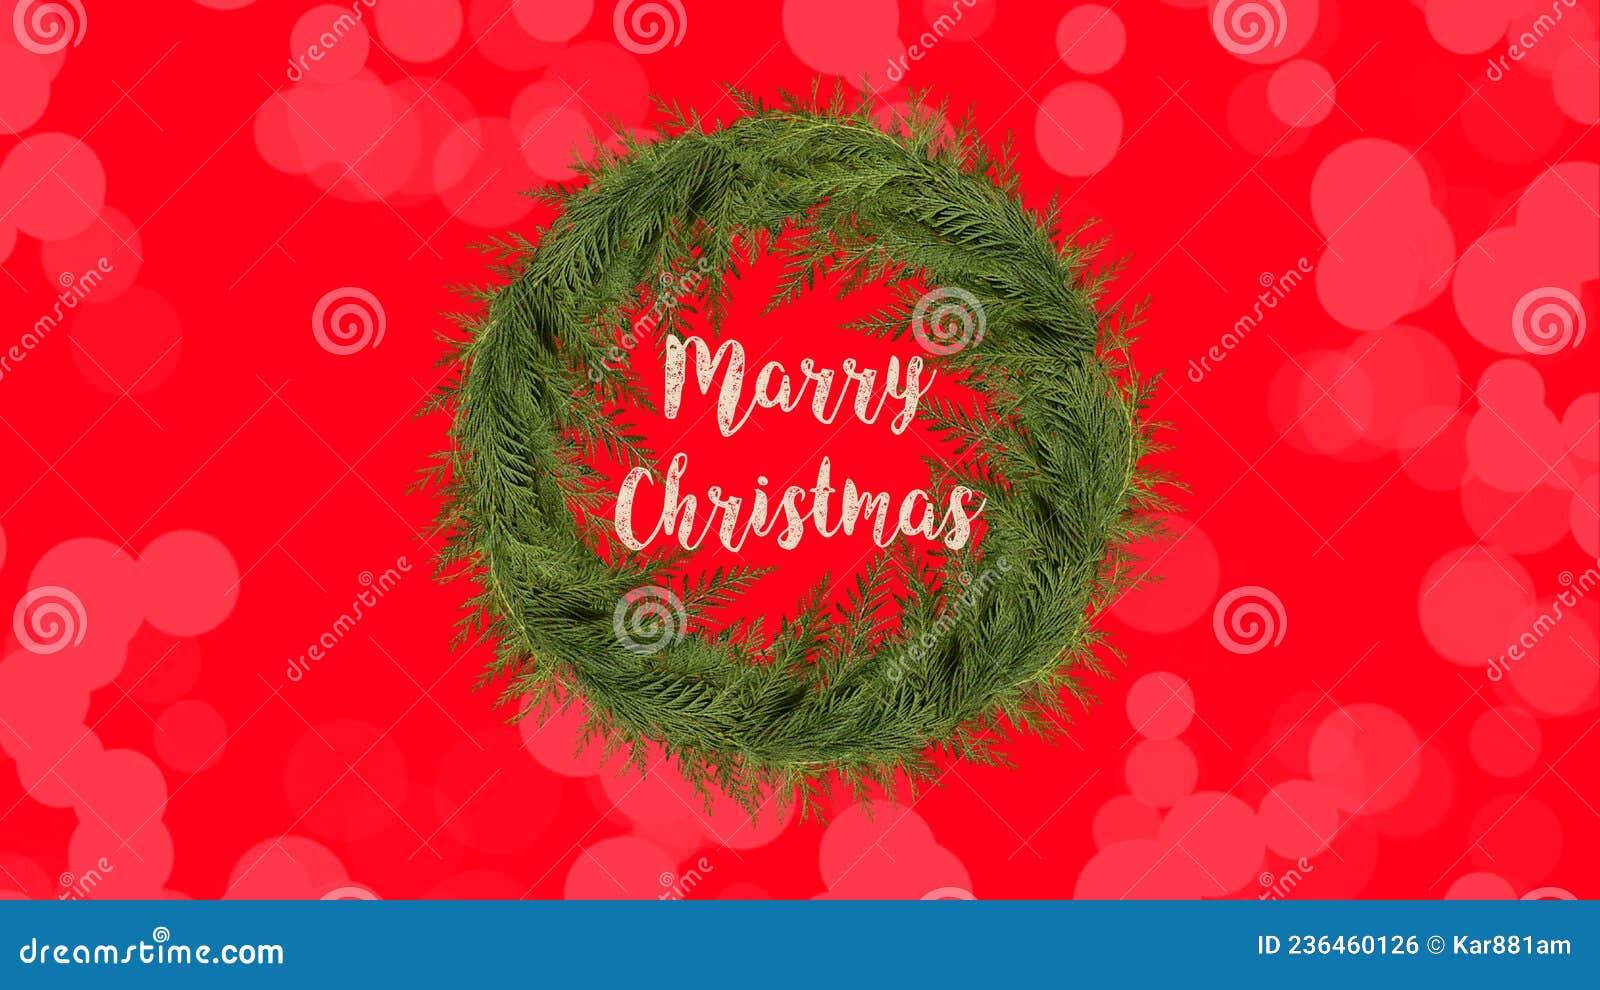 Hình nền Merry Christmas: Chúc mừng Giáng sinh đến với bạn! Với những hình nền Merry Christmas đầy màu sắc và rực rỡ, chúng tôi hy vọng sẽ giúp bạn tạo ra một không gian ấm áp, đầy niềm vui và hạnh phúc cho gia đình và người thân của mình.